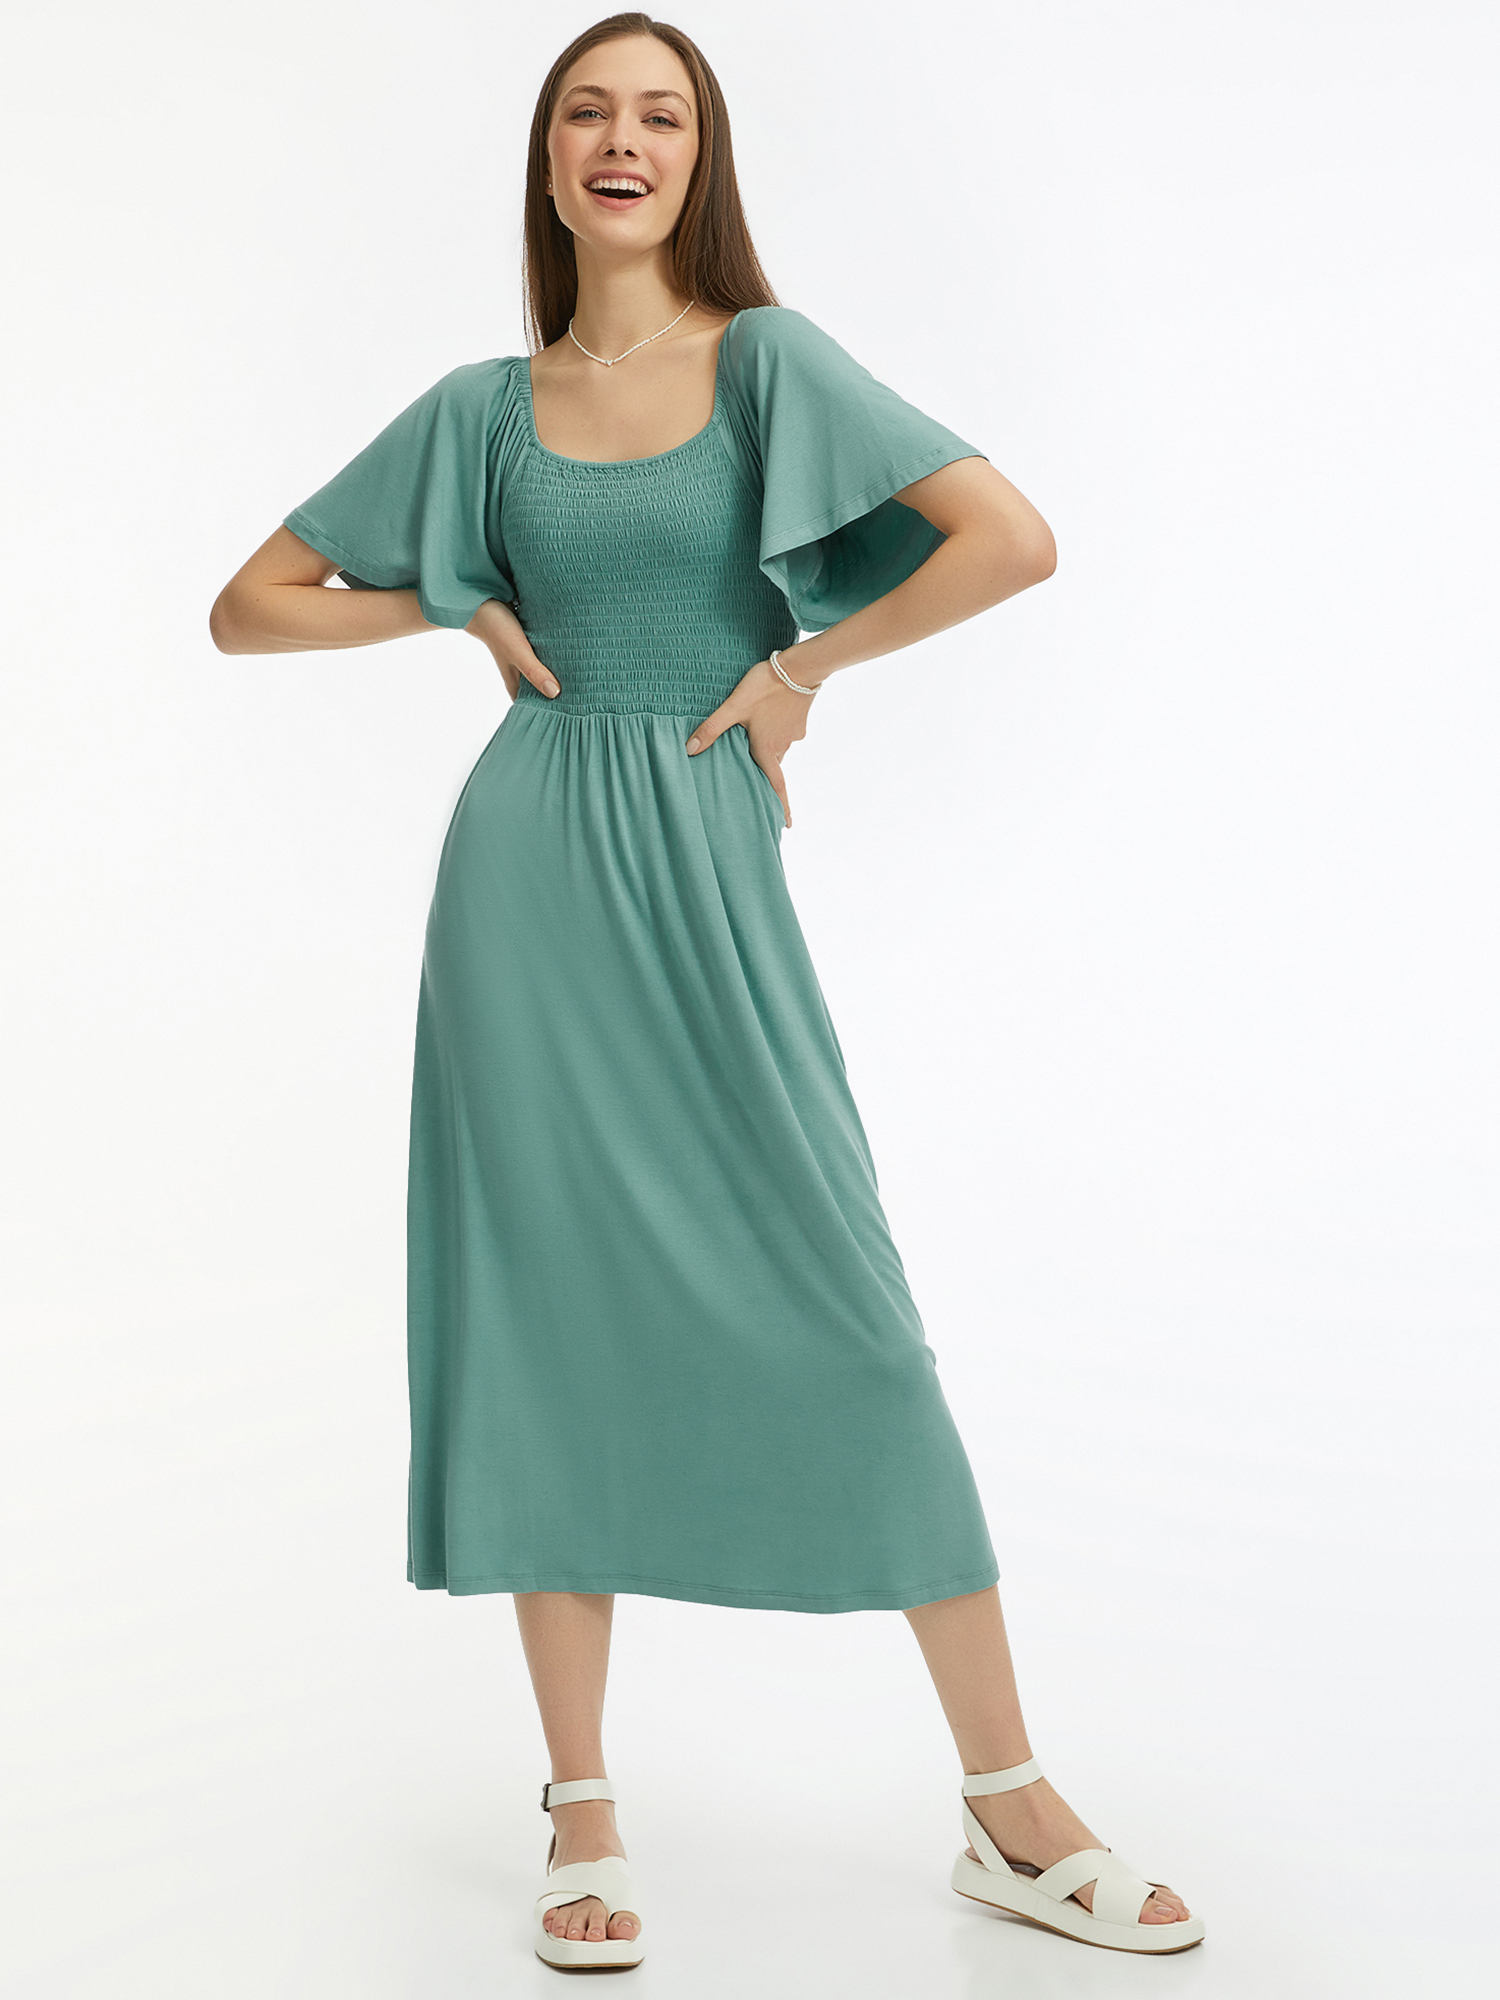 Платье женское oodji 14000184 зеленое S